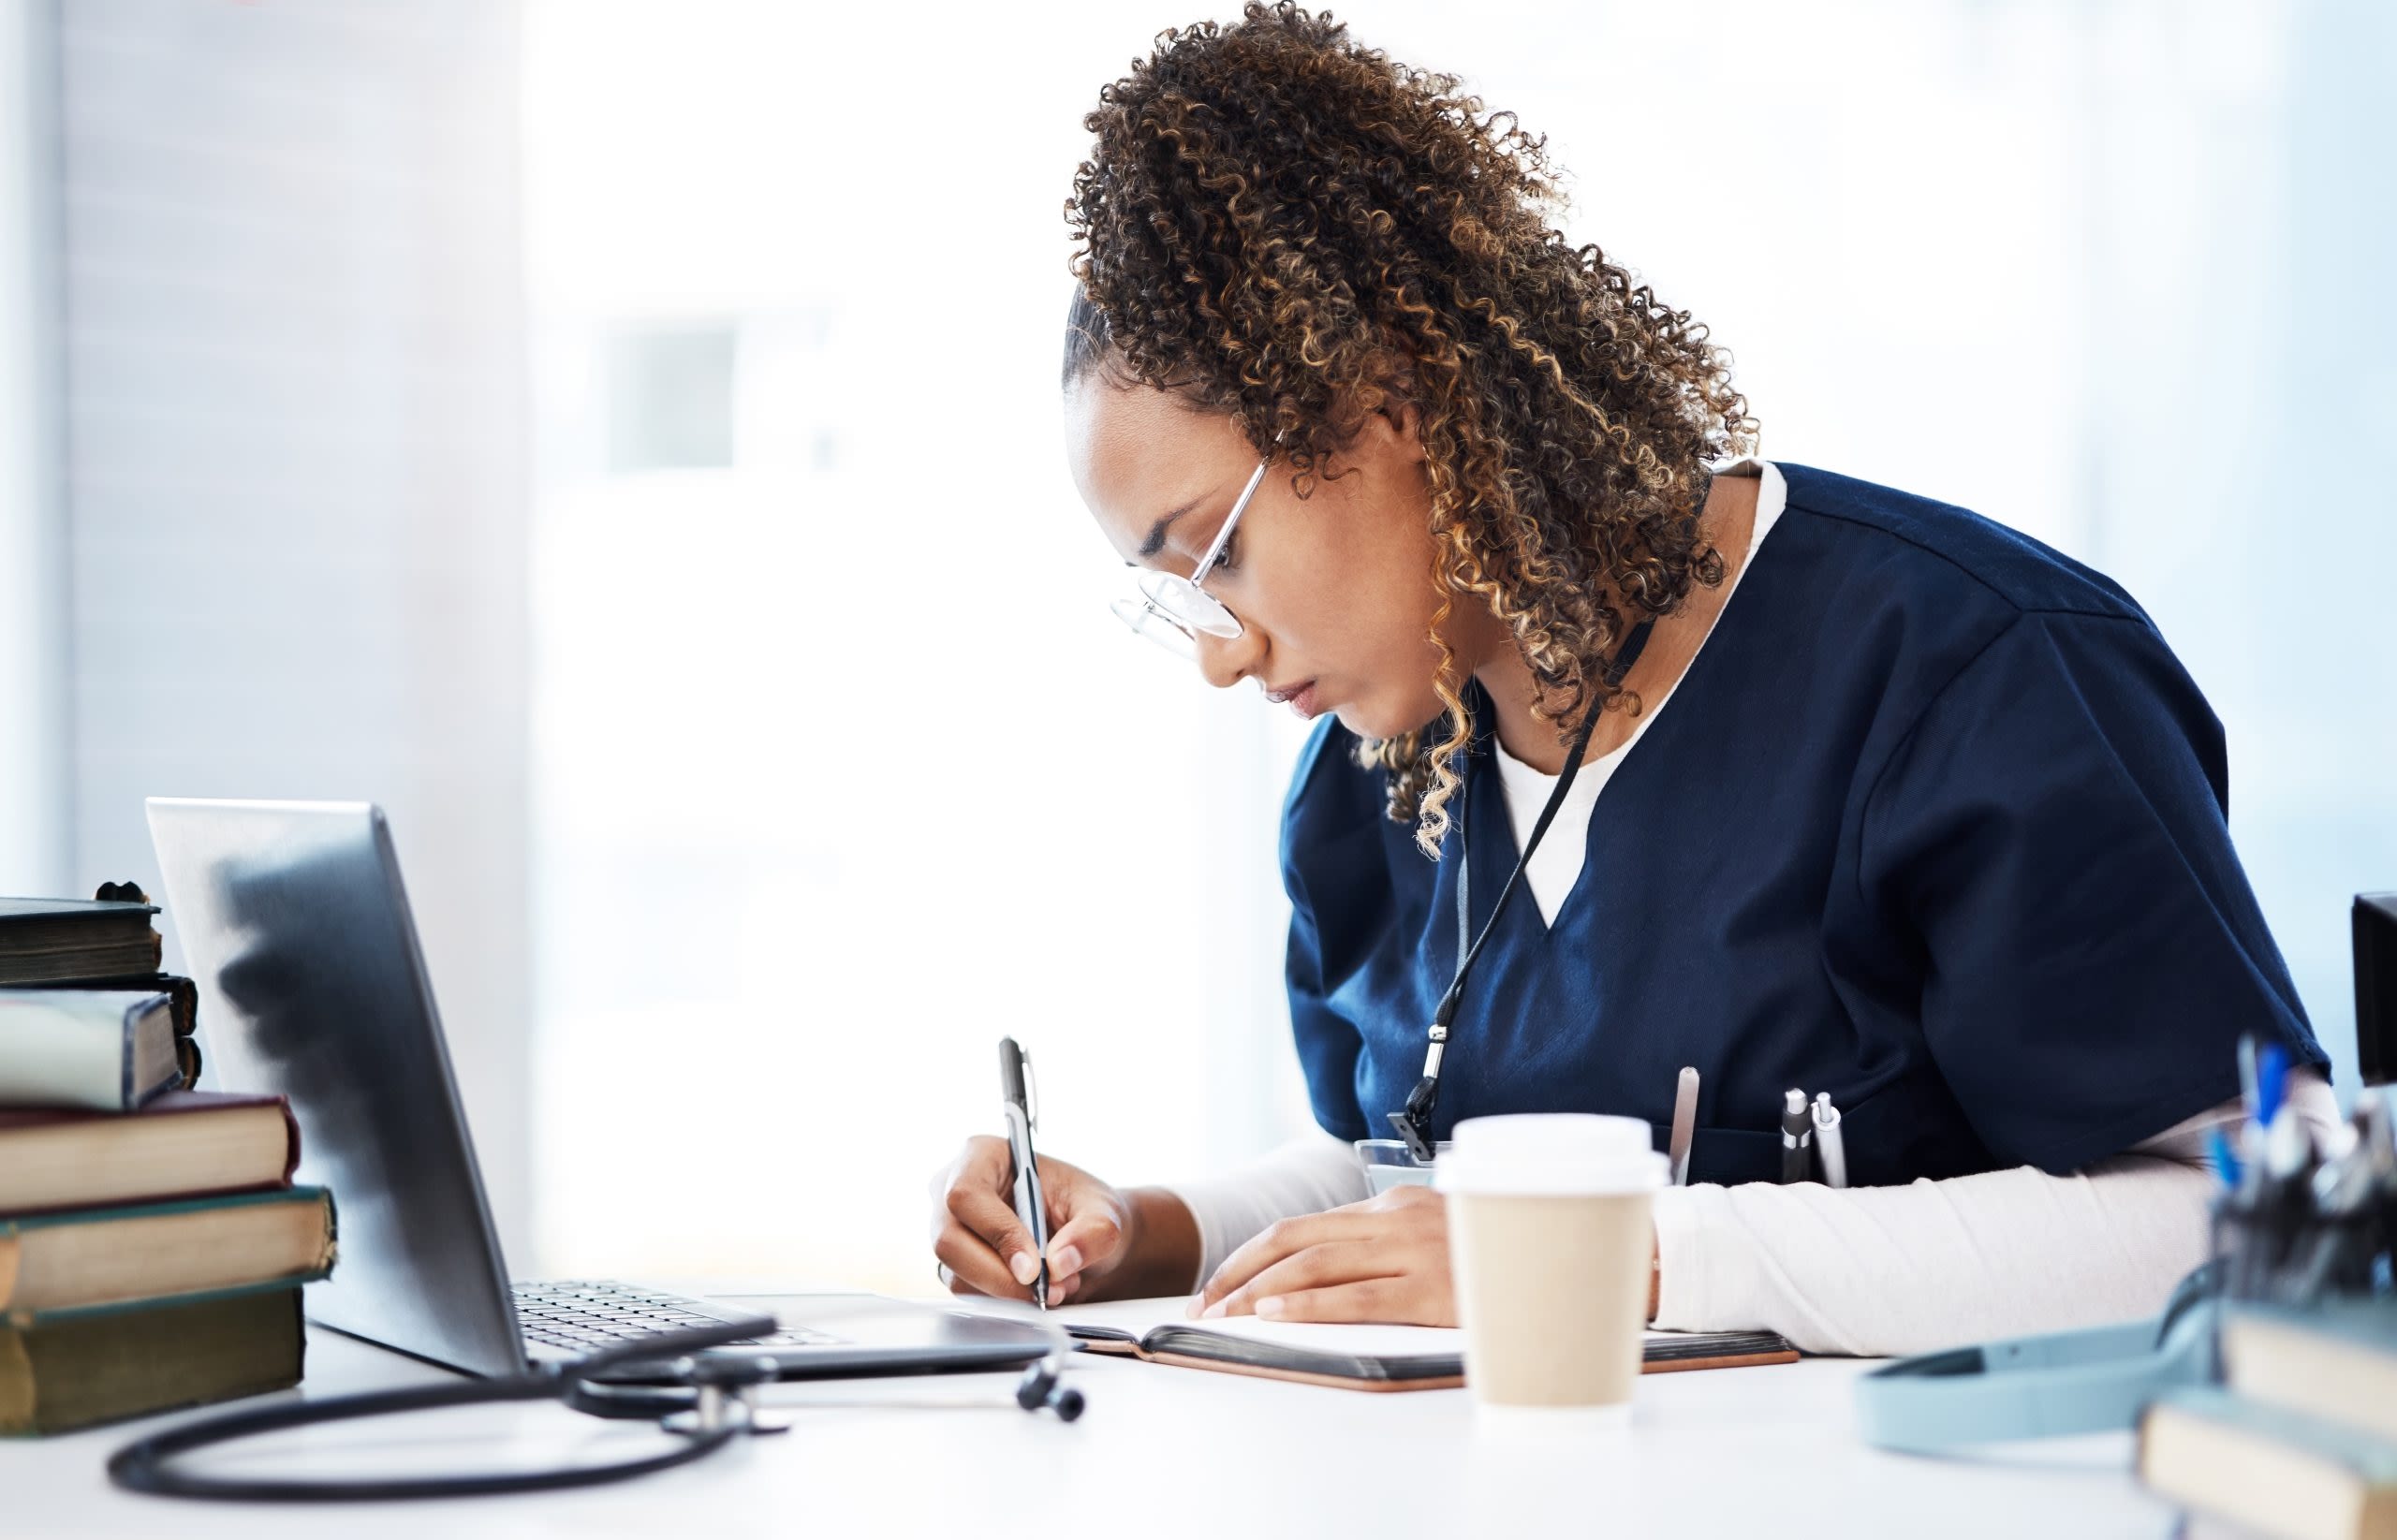 UMFK's Doctor of Nursing Practice program is 100% online